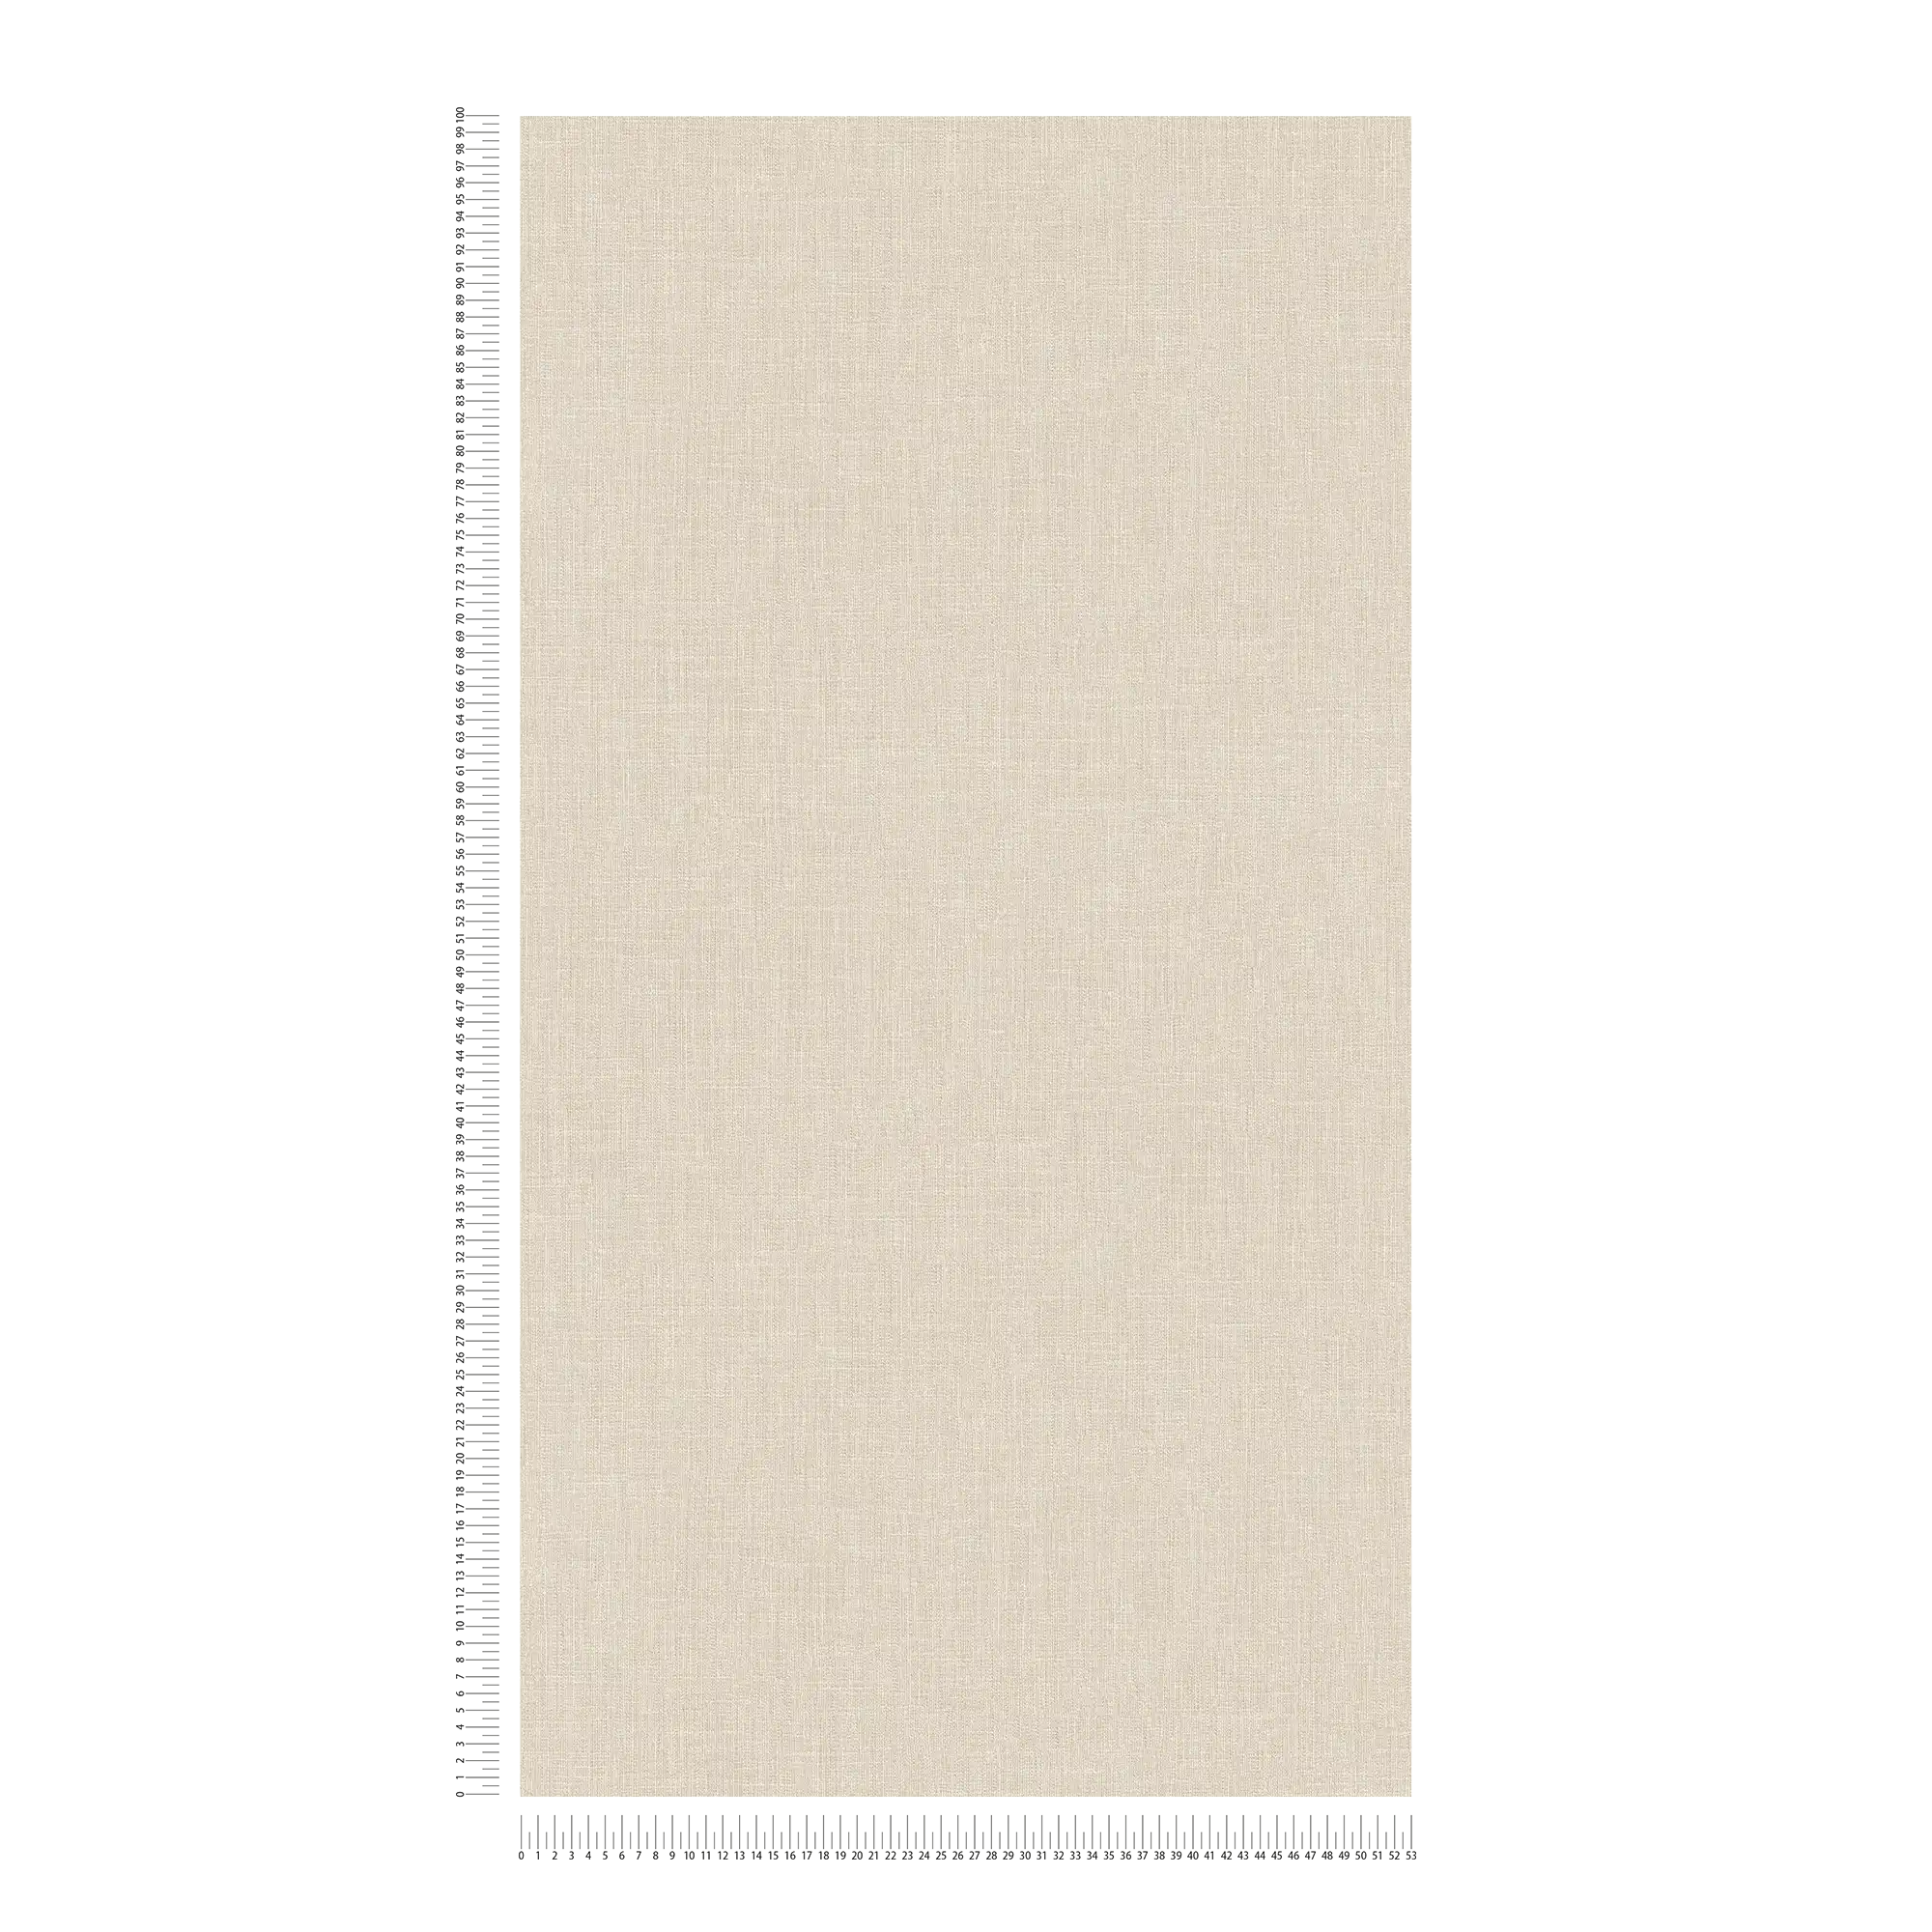             Carta da parati in tessuto non tessuto beige effetto lino screziato e struttura tessile
        